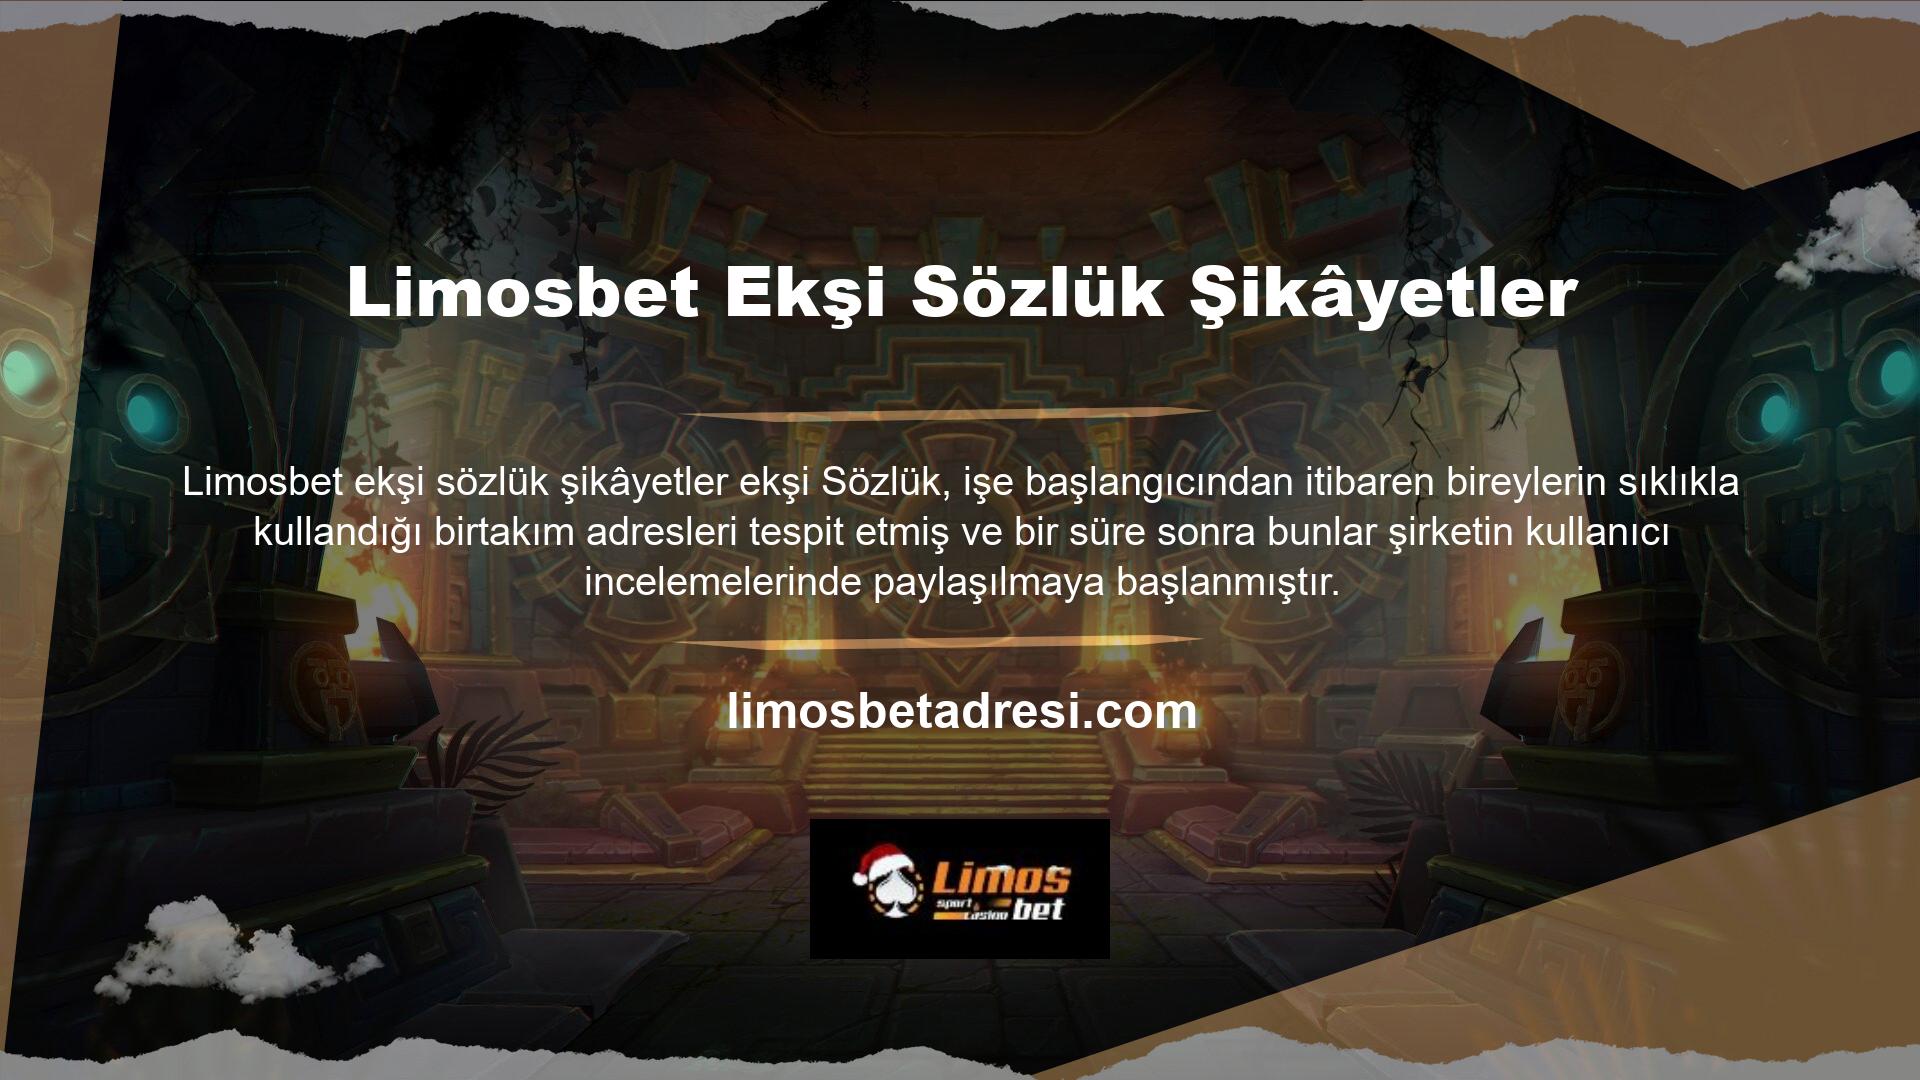 Casino sitesi şikâyet başlığını belirleyen sitelerin hemen hemen hepsinin Limosbet ile ilgili herhangi bir şikâyeti bulunmamaktadır